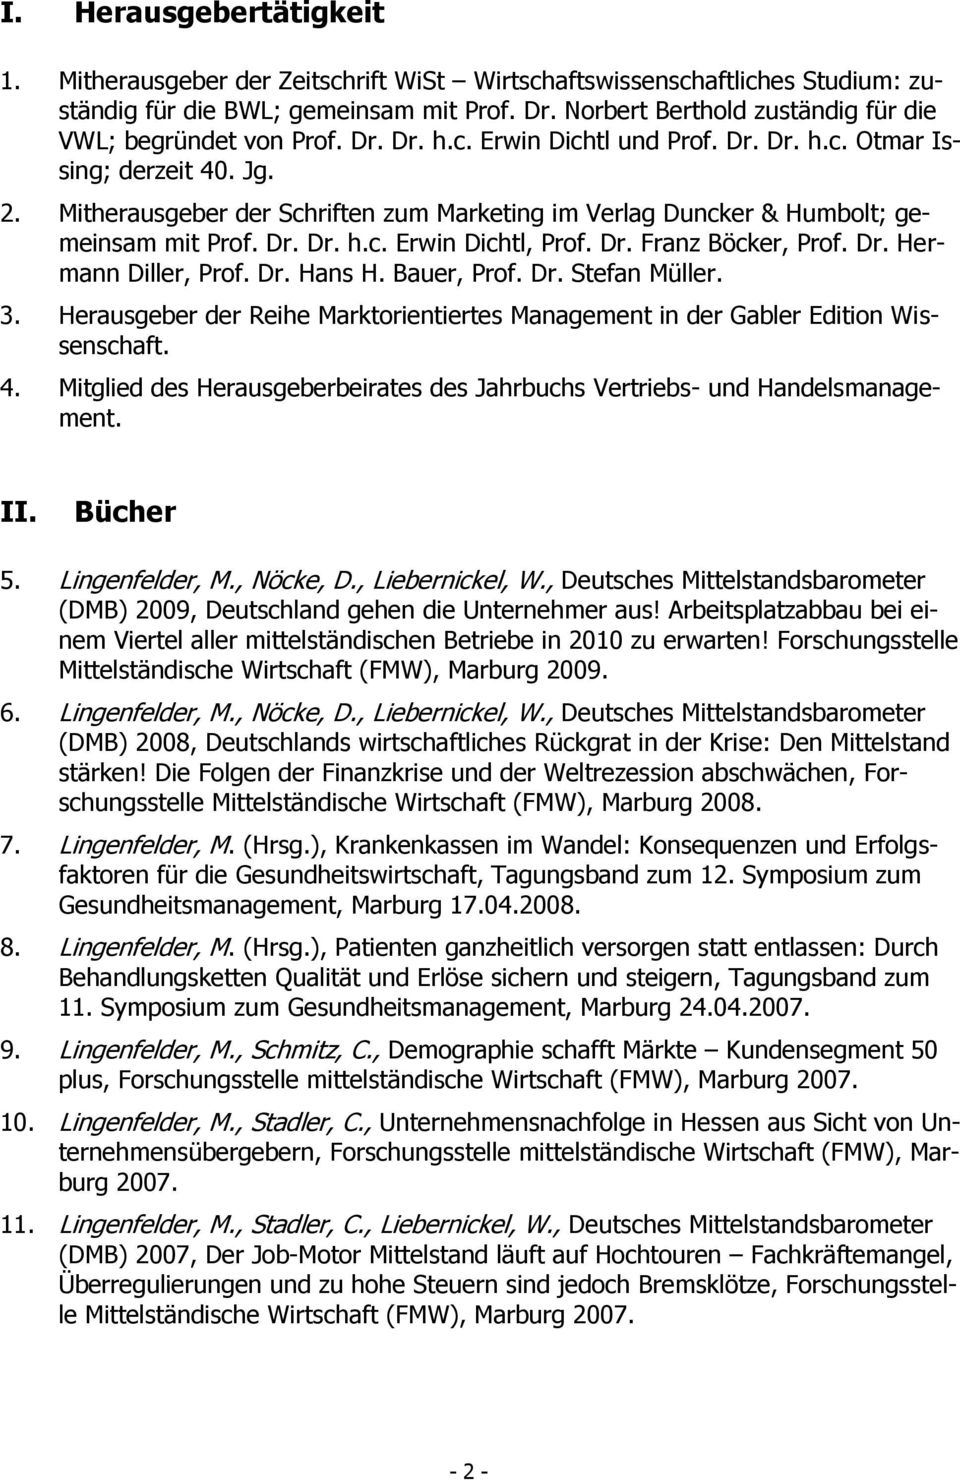 Mitherausgeber der Schriften zum Marketing im Verlag Duncker & Humbolt; gemeinsam mit Prof. Dr. Dr. h.c. Erwin Dichtl, Prof. Dr. Franz Böcker, Prof. Dr. Hermann Diller, Prof. Dr. Hans H. Bauer, Prof.